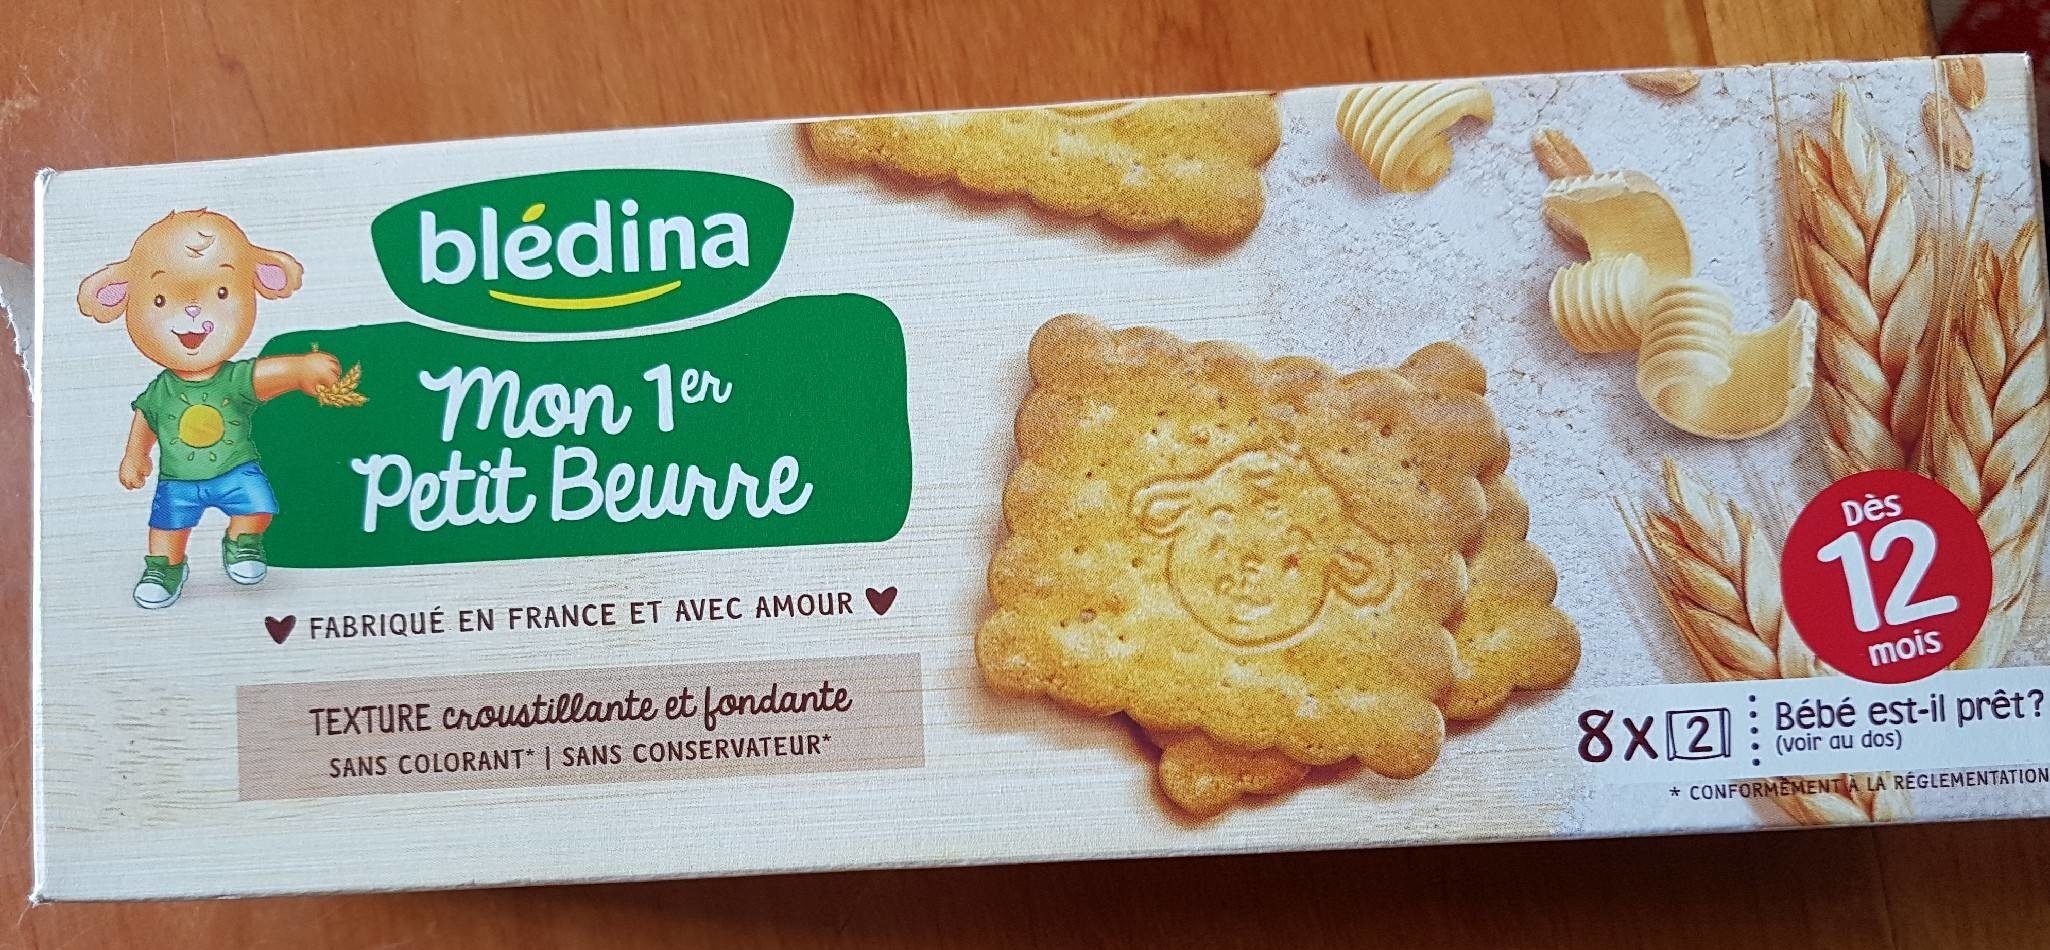 BLEDINA Mon Premier Petit Beurre 133g dès 12 mois - Produit